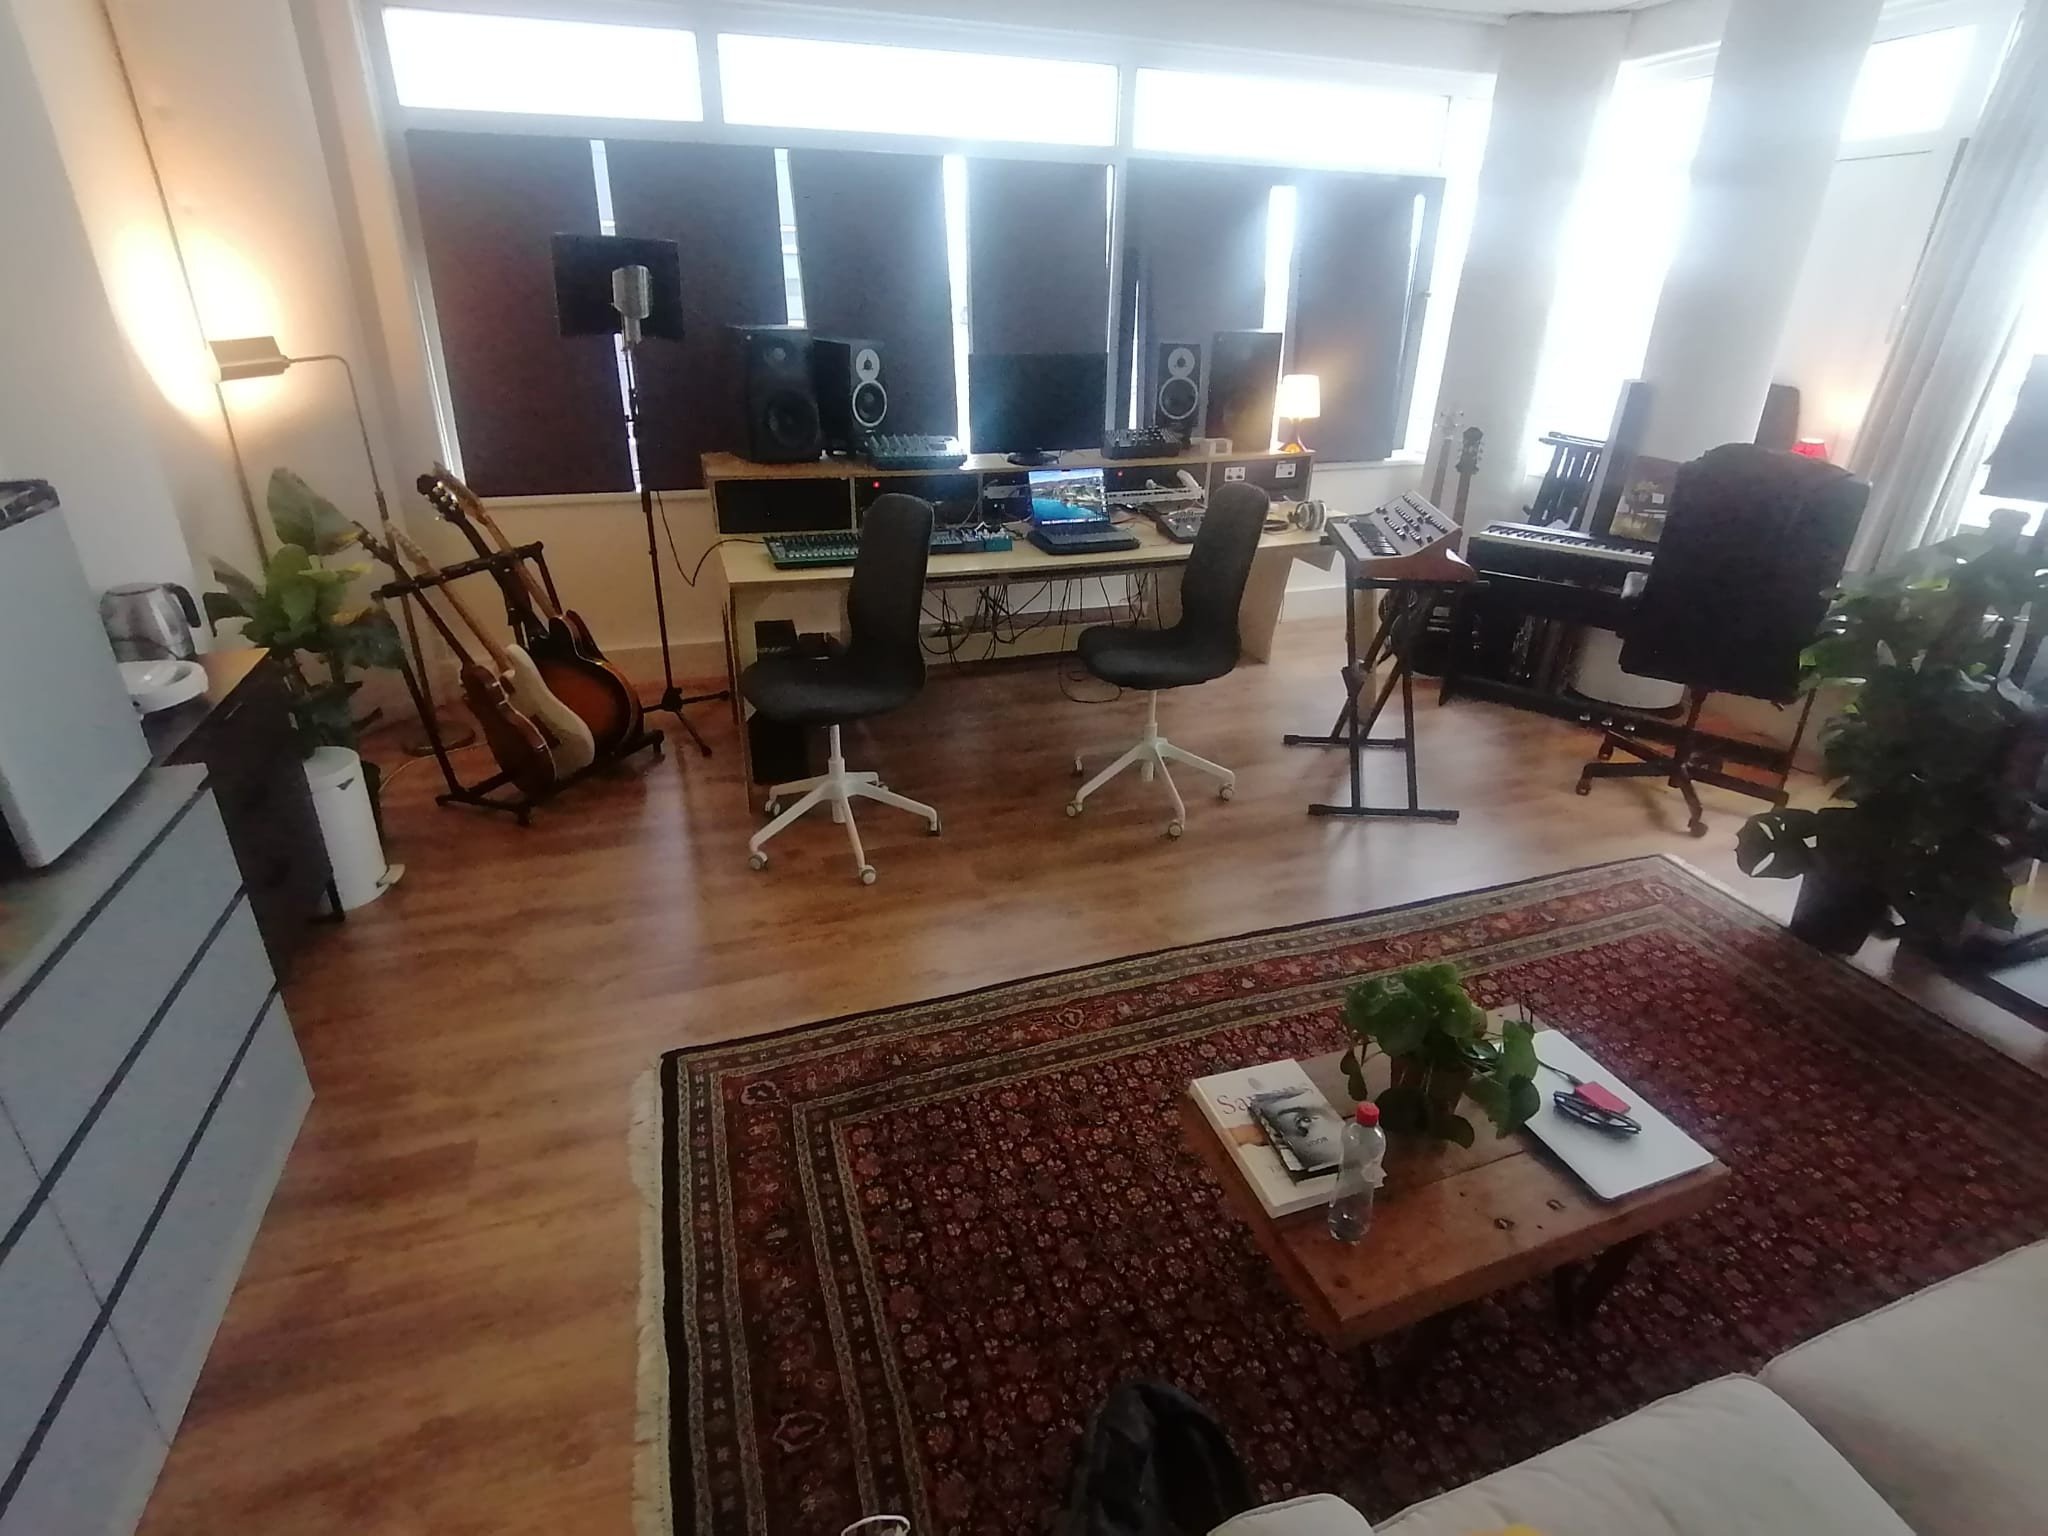 Studio Setup 2